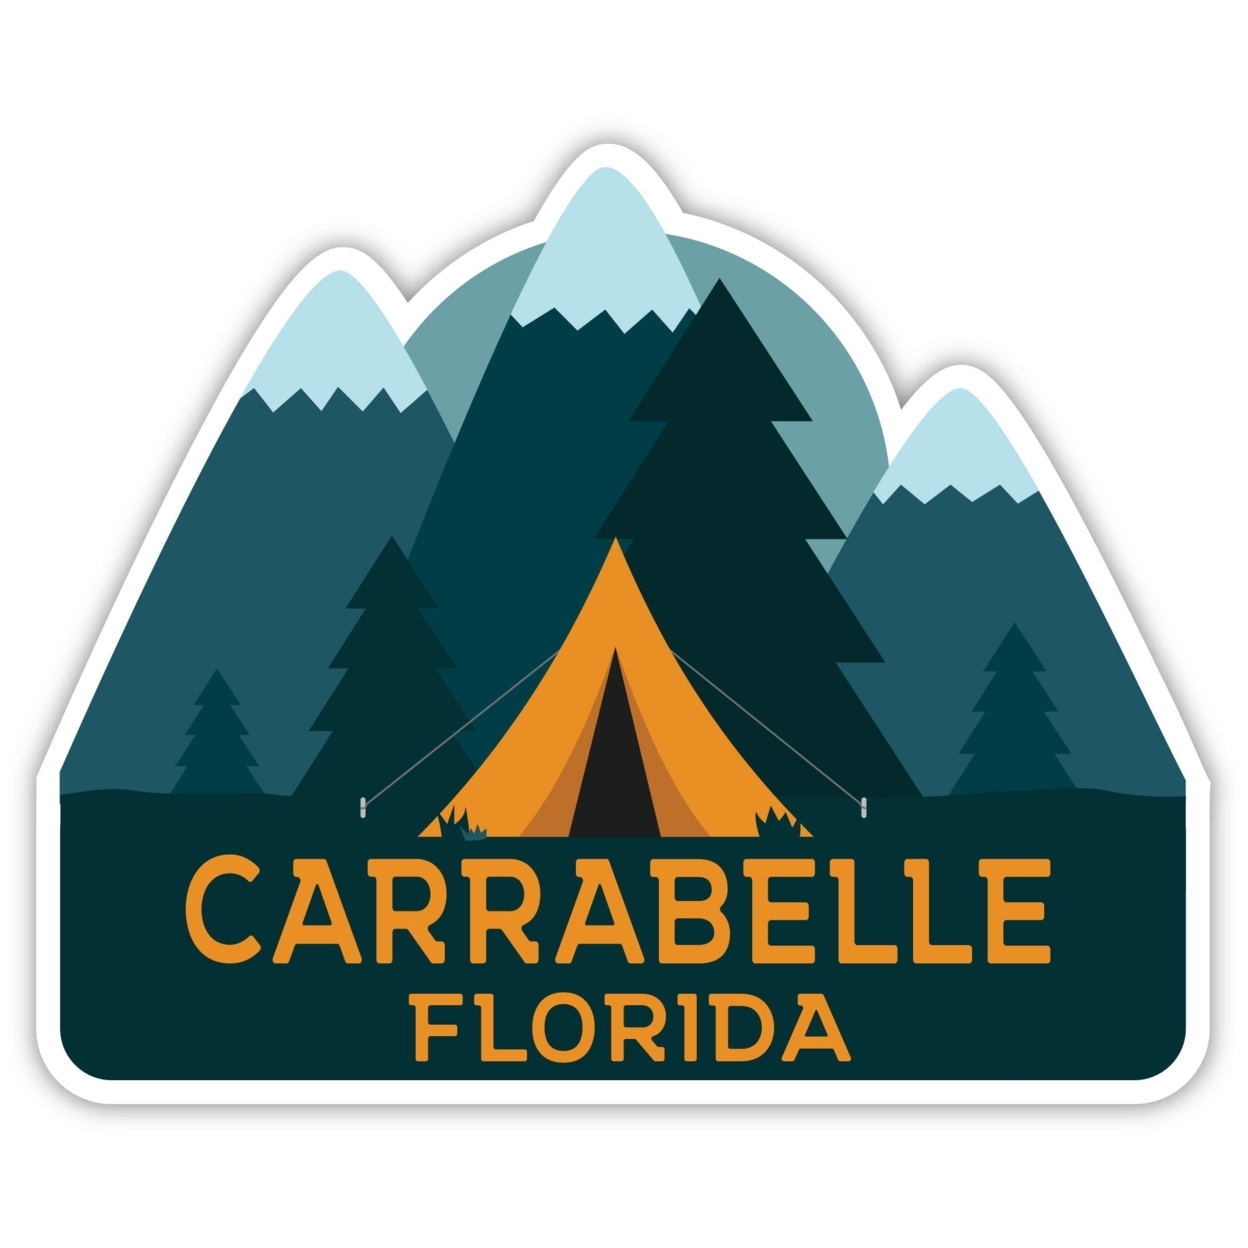 Carrabelle Florida Souvenir Decorative Stickers (Choose Theme And Size) - Single Unit, 2-Inch, Tent